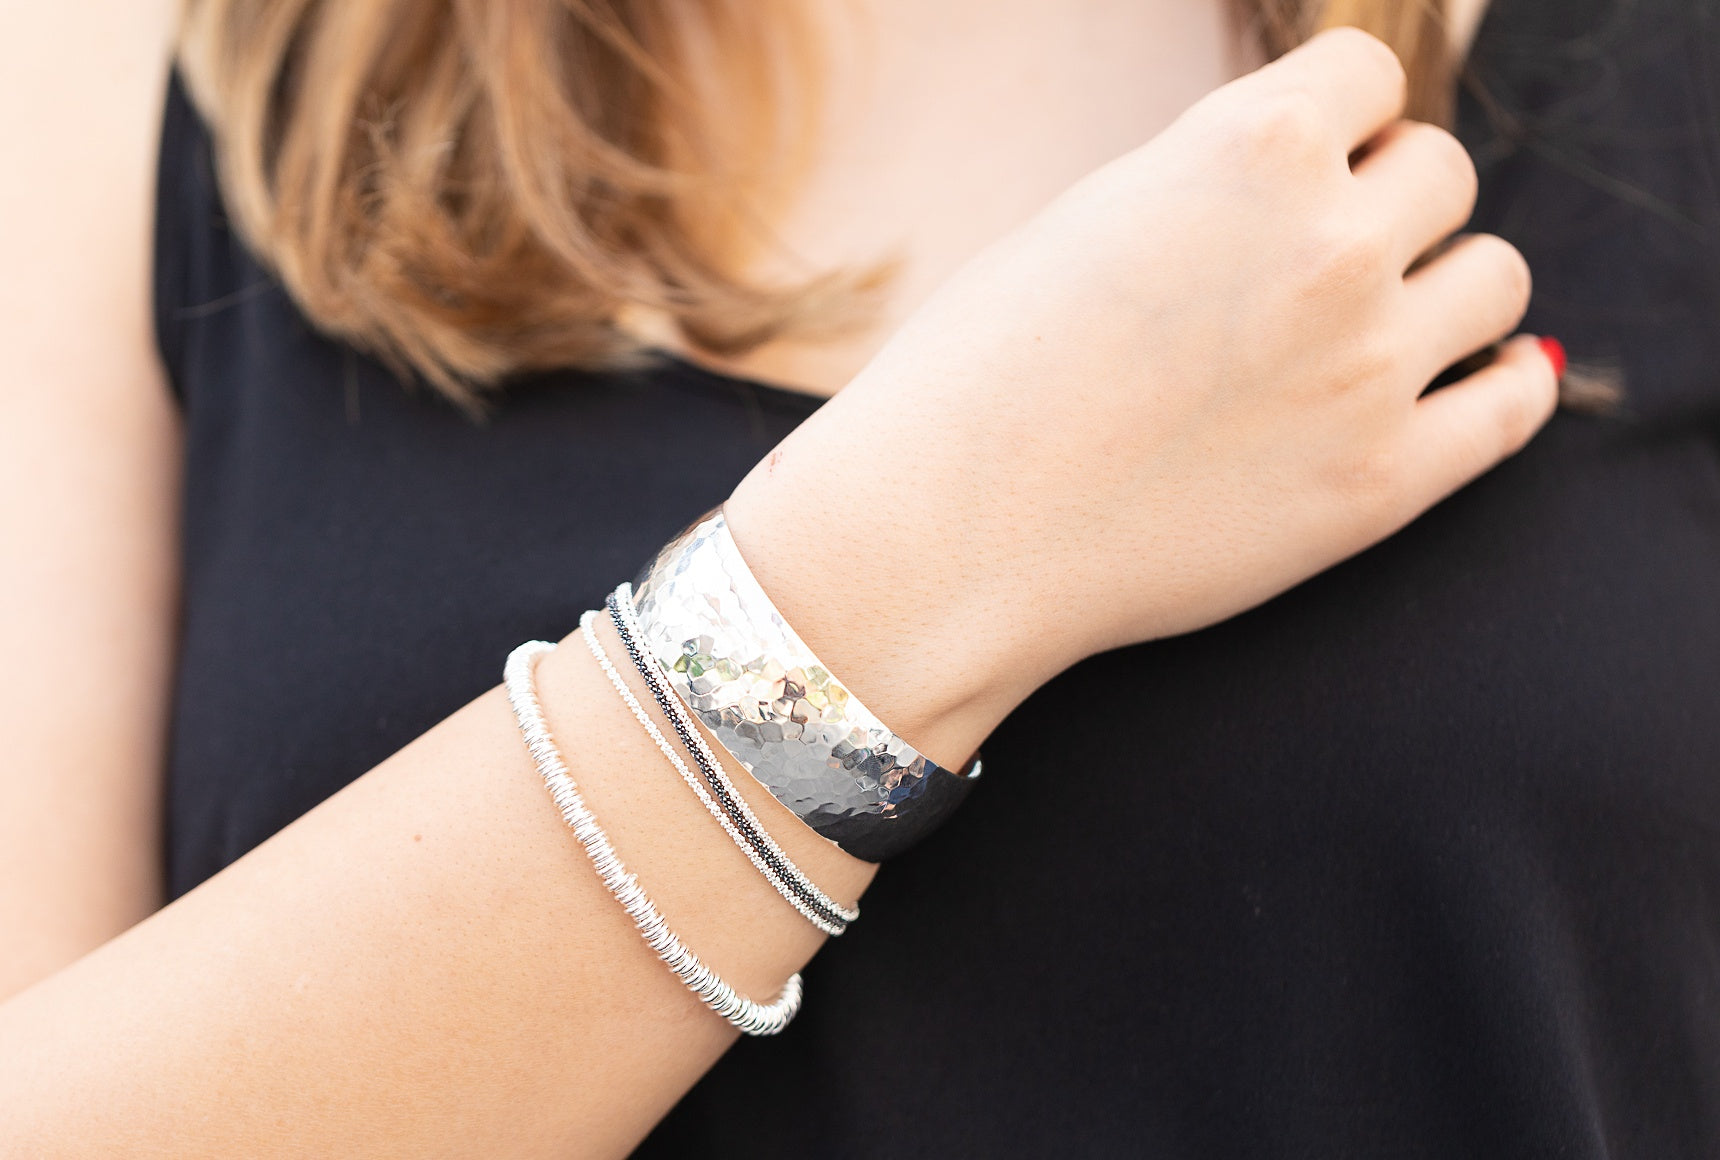 Ein Silberarmband aus vielen kleinen Silberringen mit einem dekorativen Verschluss, getragen am Handgelenk einer Dame.